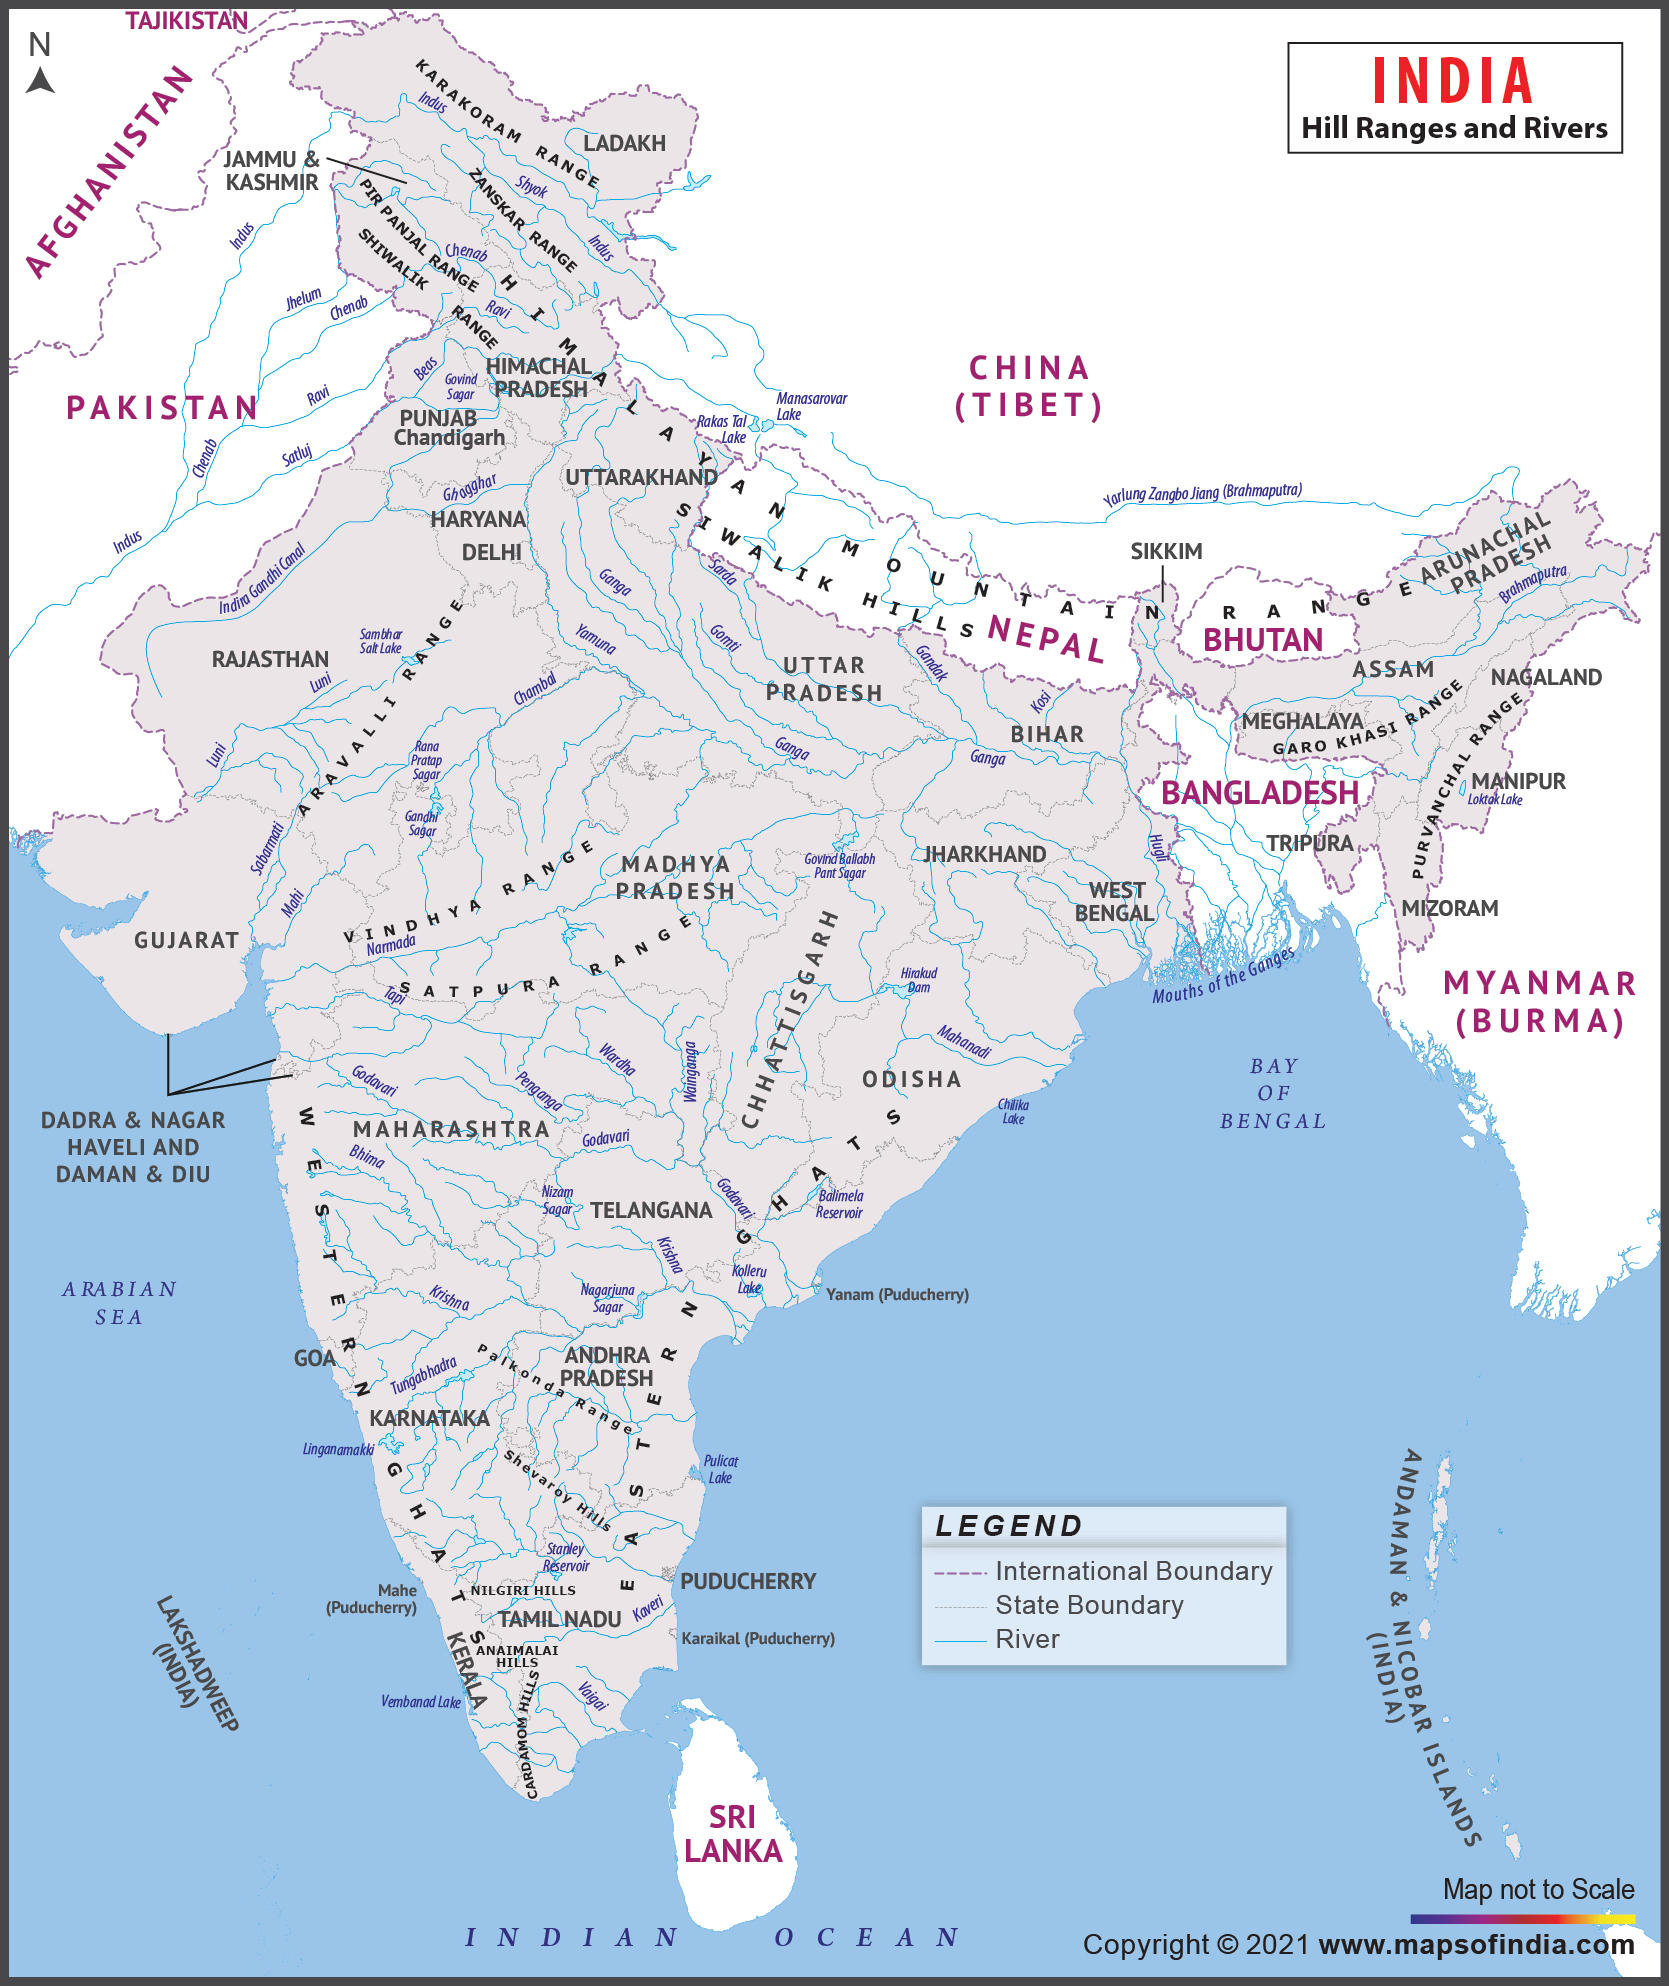 भारत में सर्वोच्च पर्वत श्रृंखलाएं | राज्यवार-मानचित्र के साथ सभी प्रसिद्ध पर्वत श्रृंखलाओं की सूची_4.1